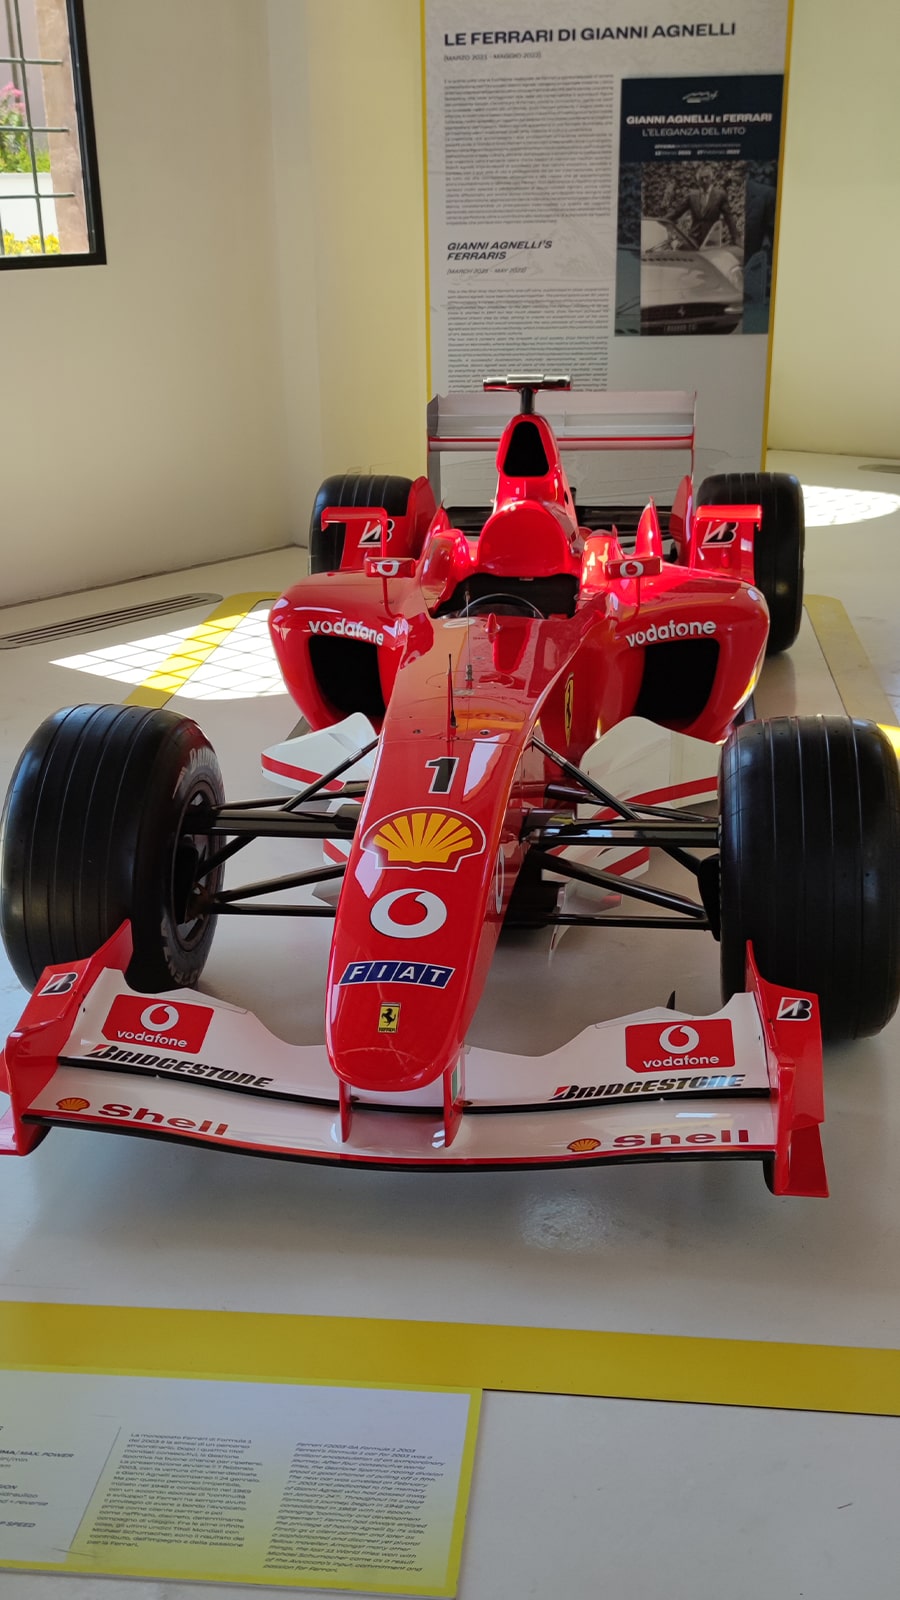 Ferrari Museum in Italien. Das Formel 1 Fahrzeug